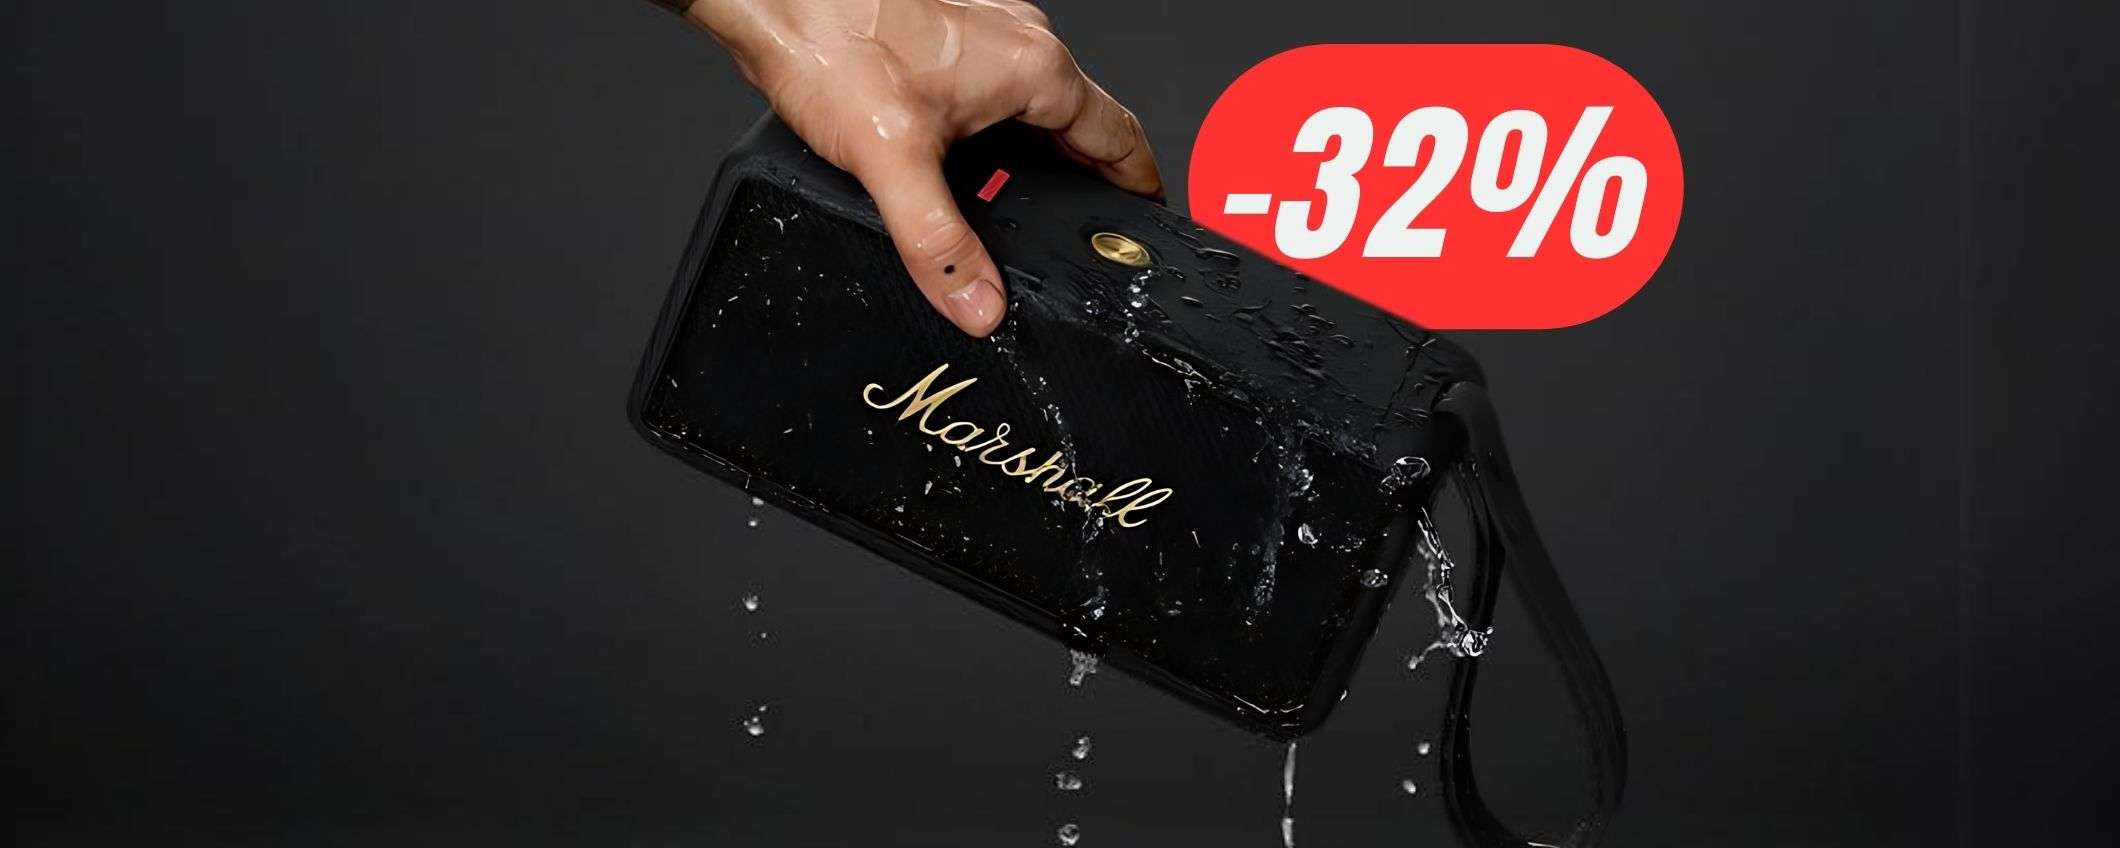 La cassa Bluetooth di Marshall costa 95€ in MENO grazie al ribasso!